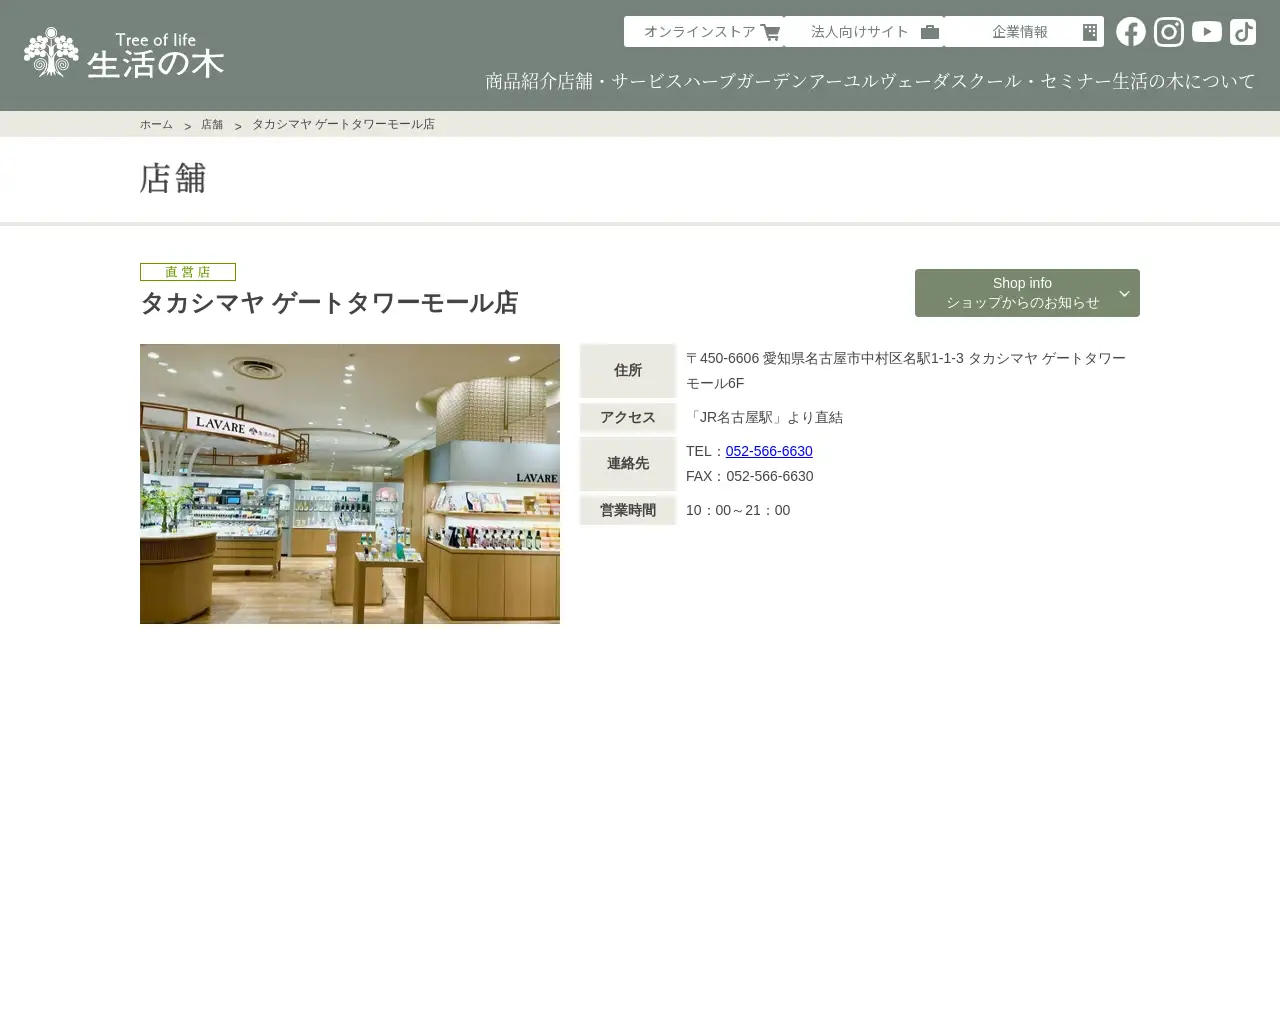 生活の木 タカシマヤ ゲートタワーモール店 site